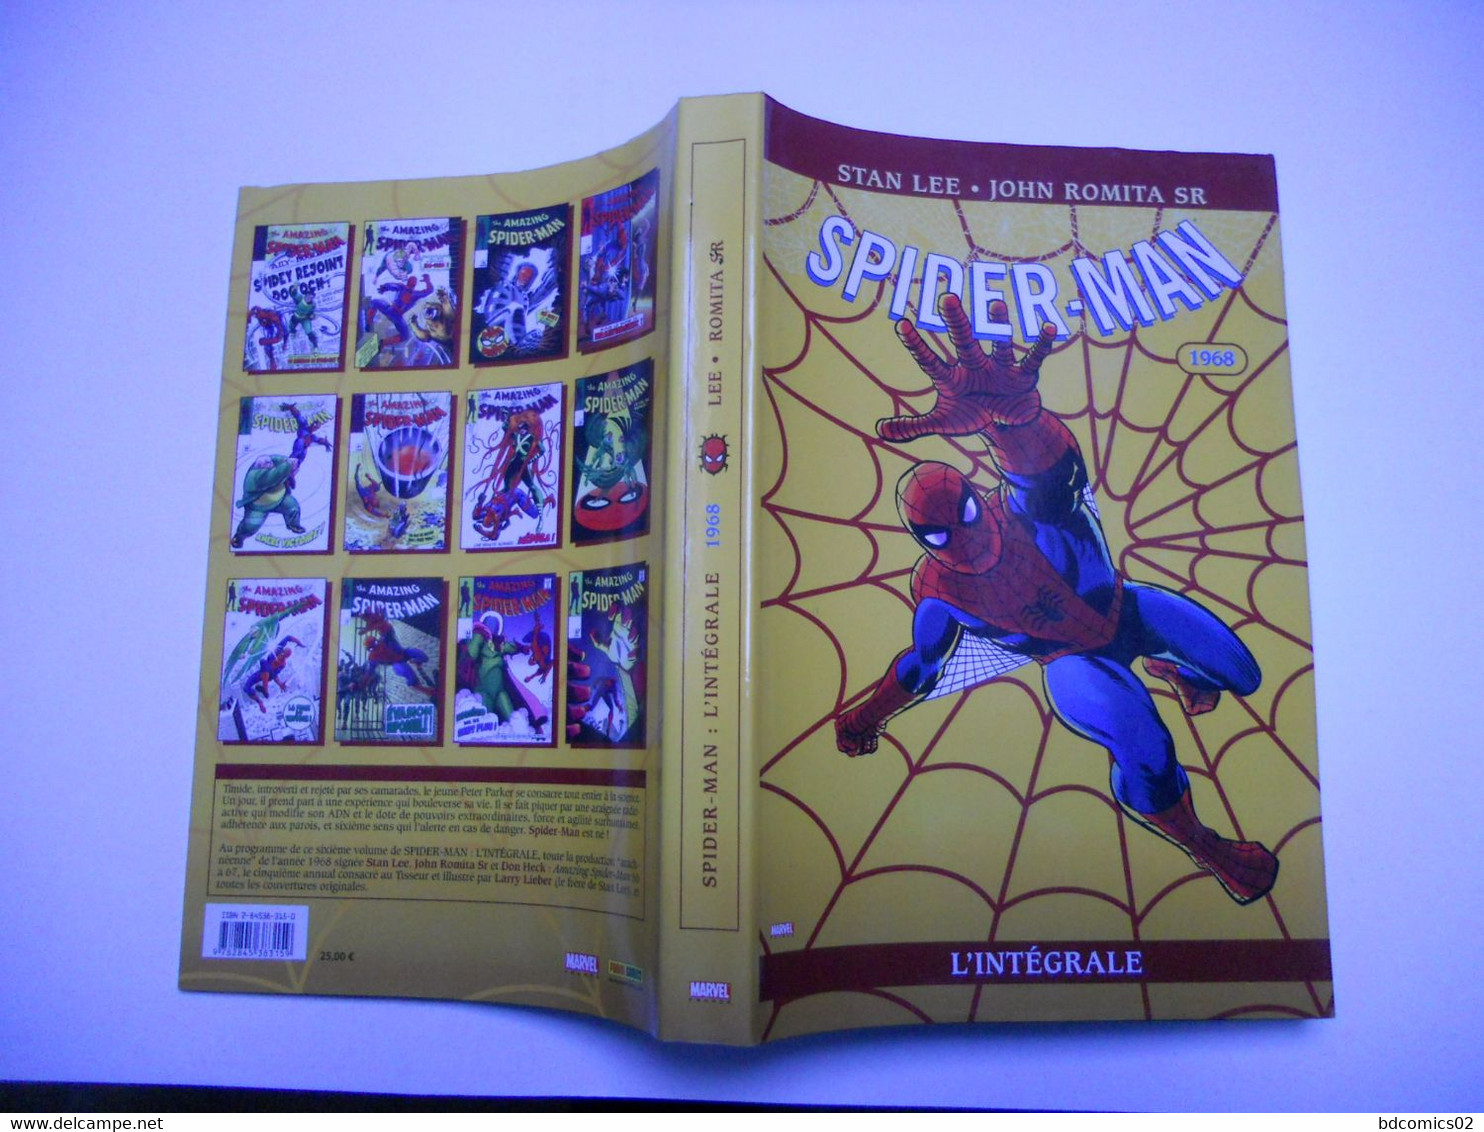 Spider-Man L'intégrale - 1968   STAN LEE /// JOHN ROMITA SR   Album Cartonné TTBE - Spiderman